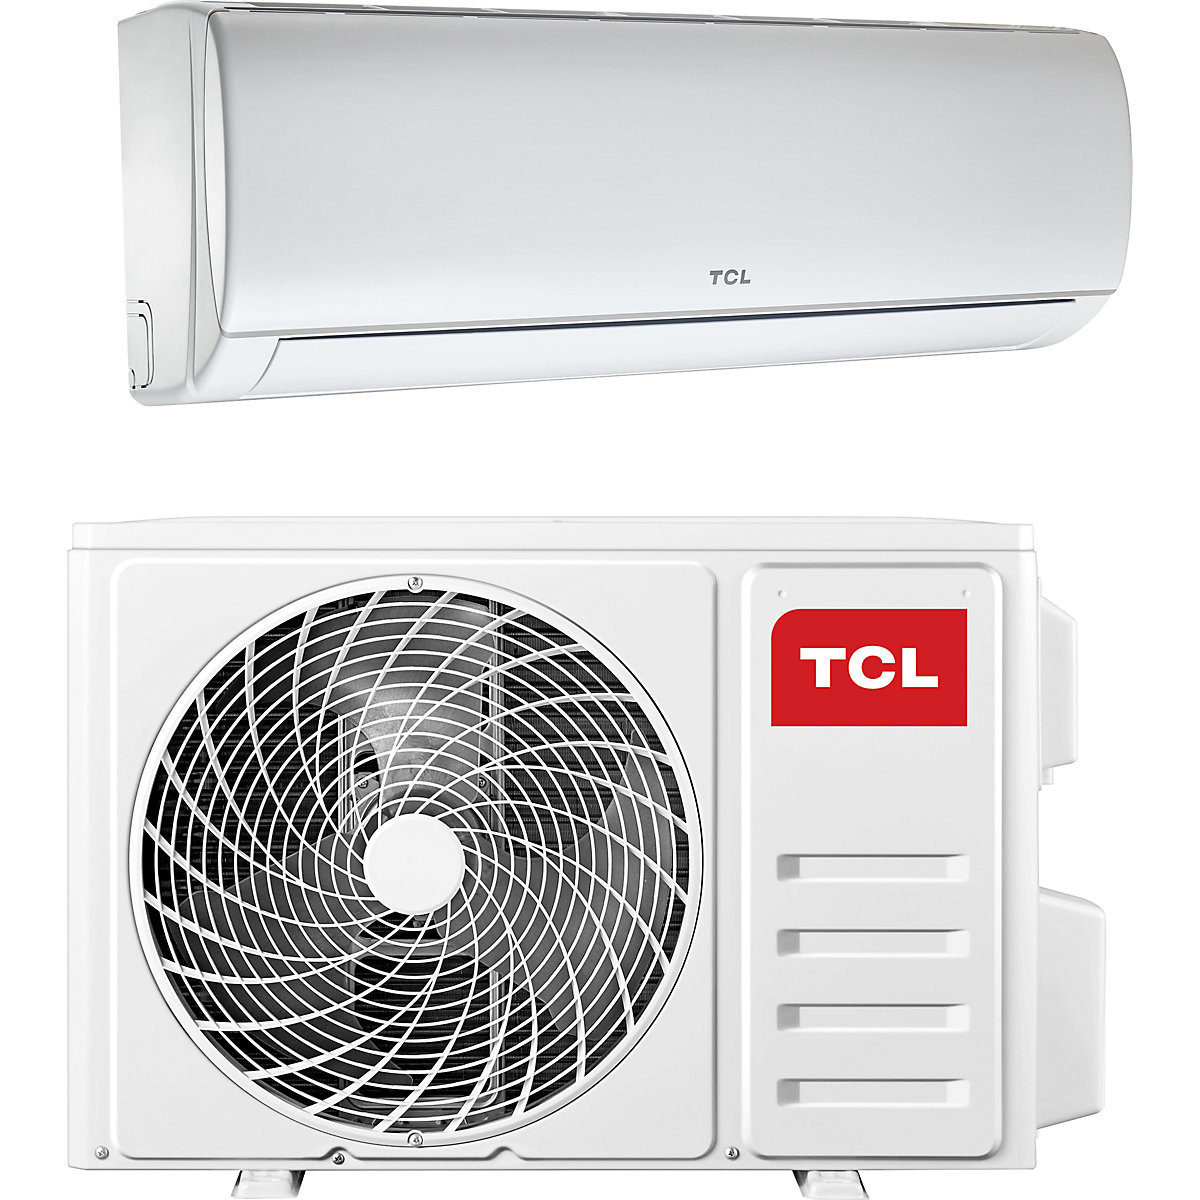 18,000 BTU split air conditioner – TCL